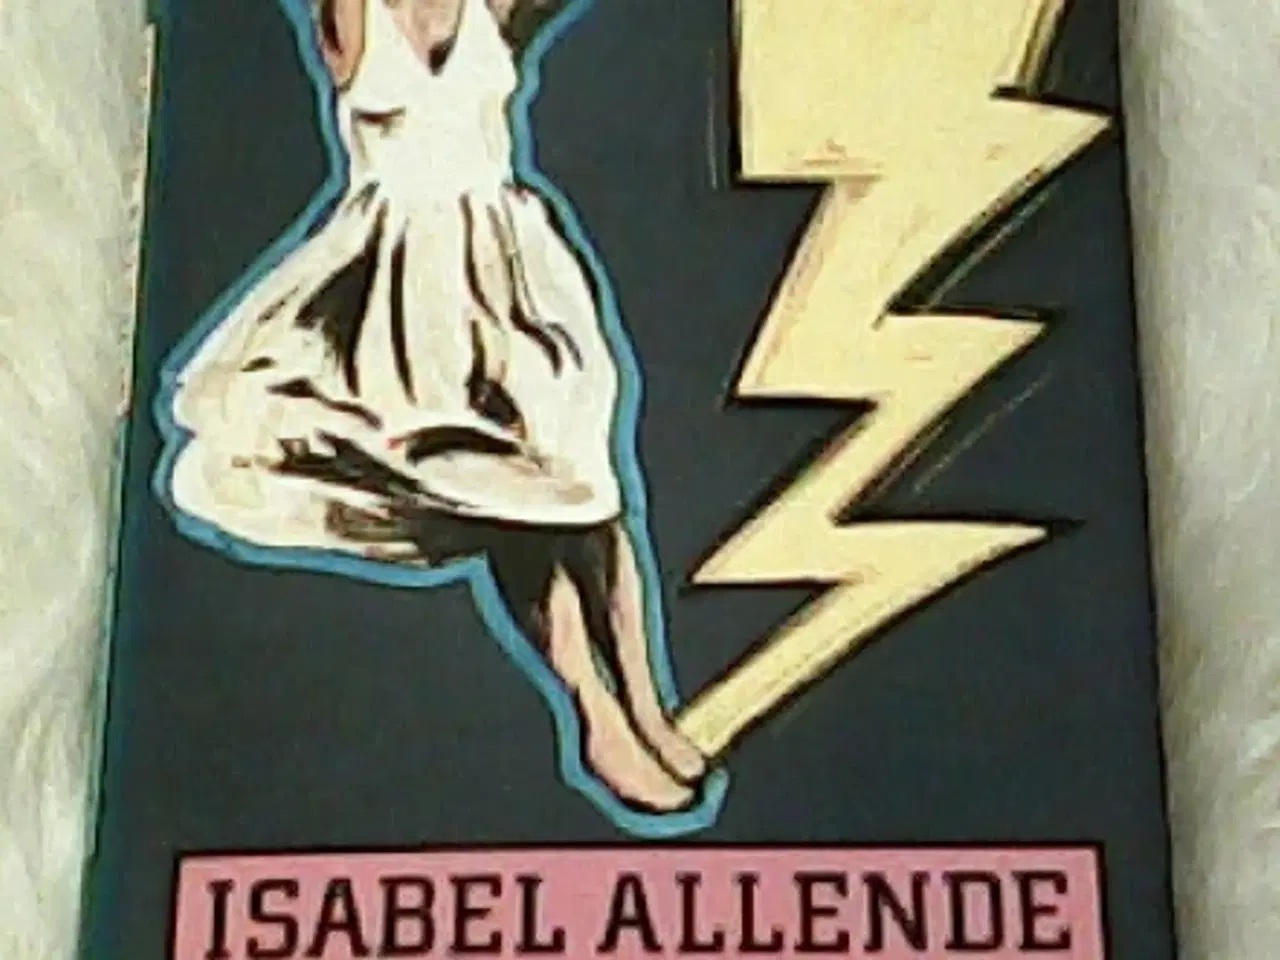 Billede 2 - 3 bøger af Isabel Allende